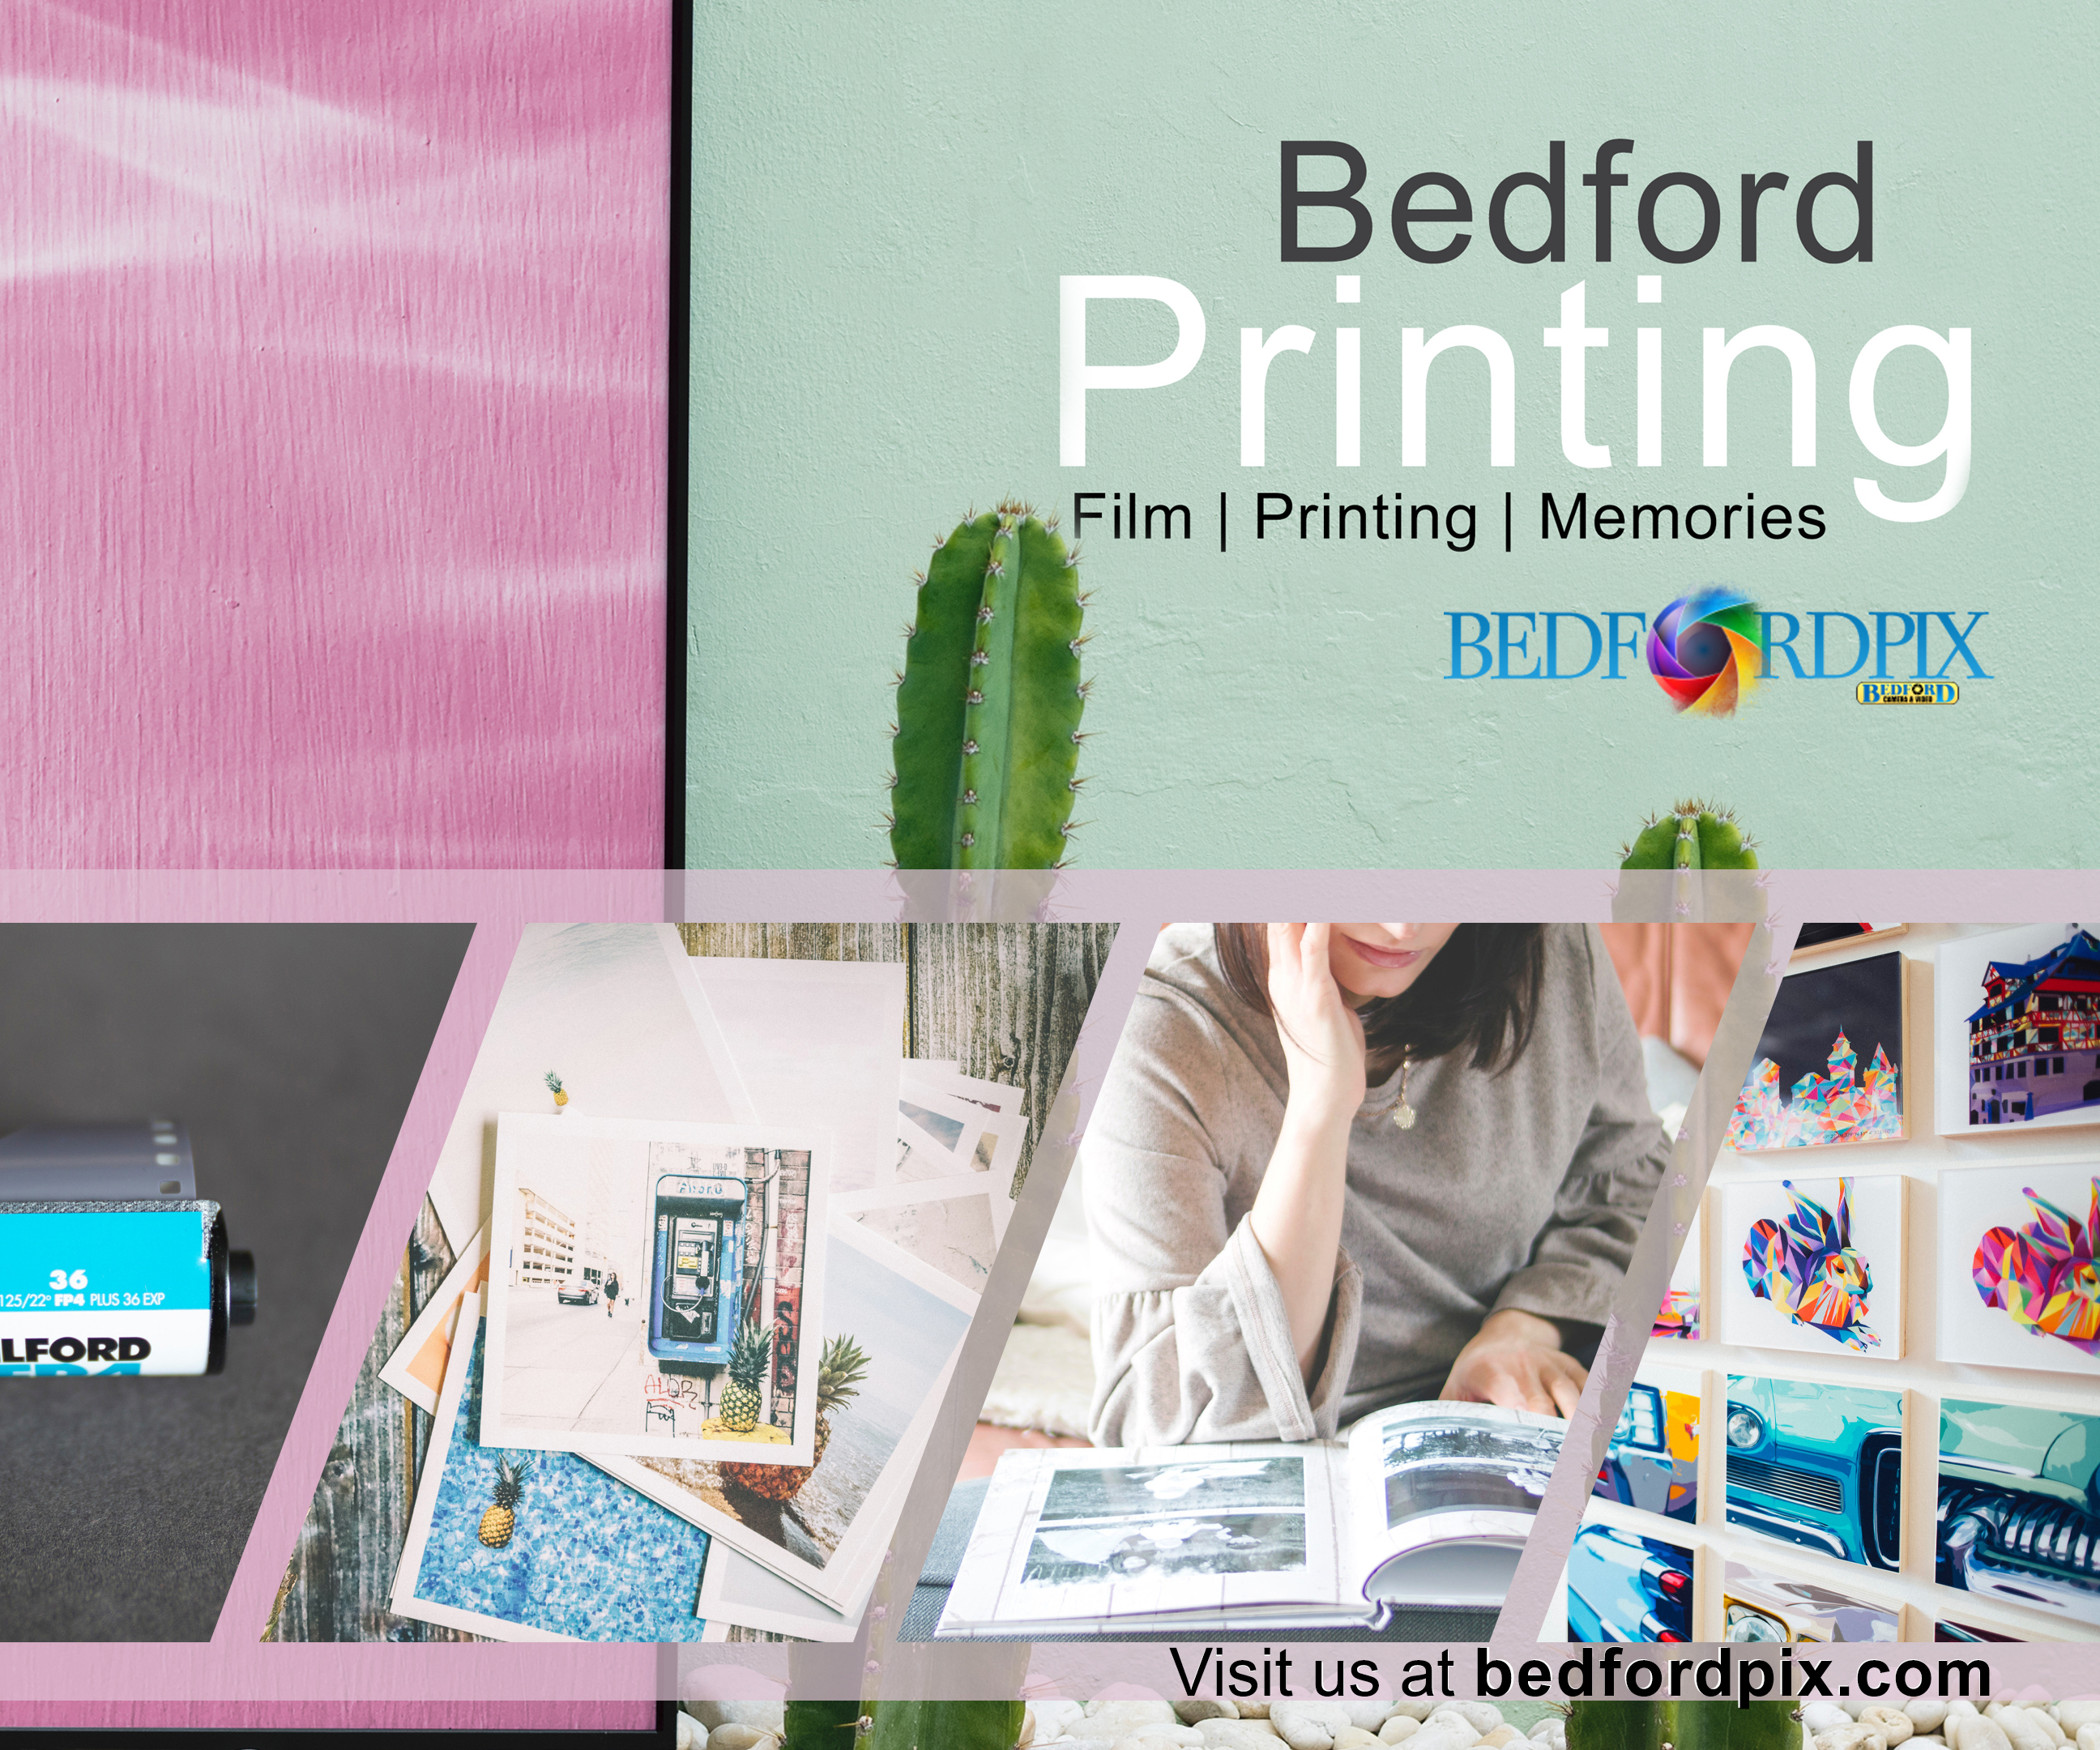 Bedford Printing